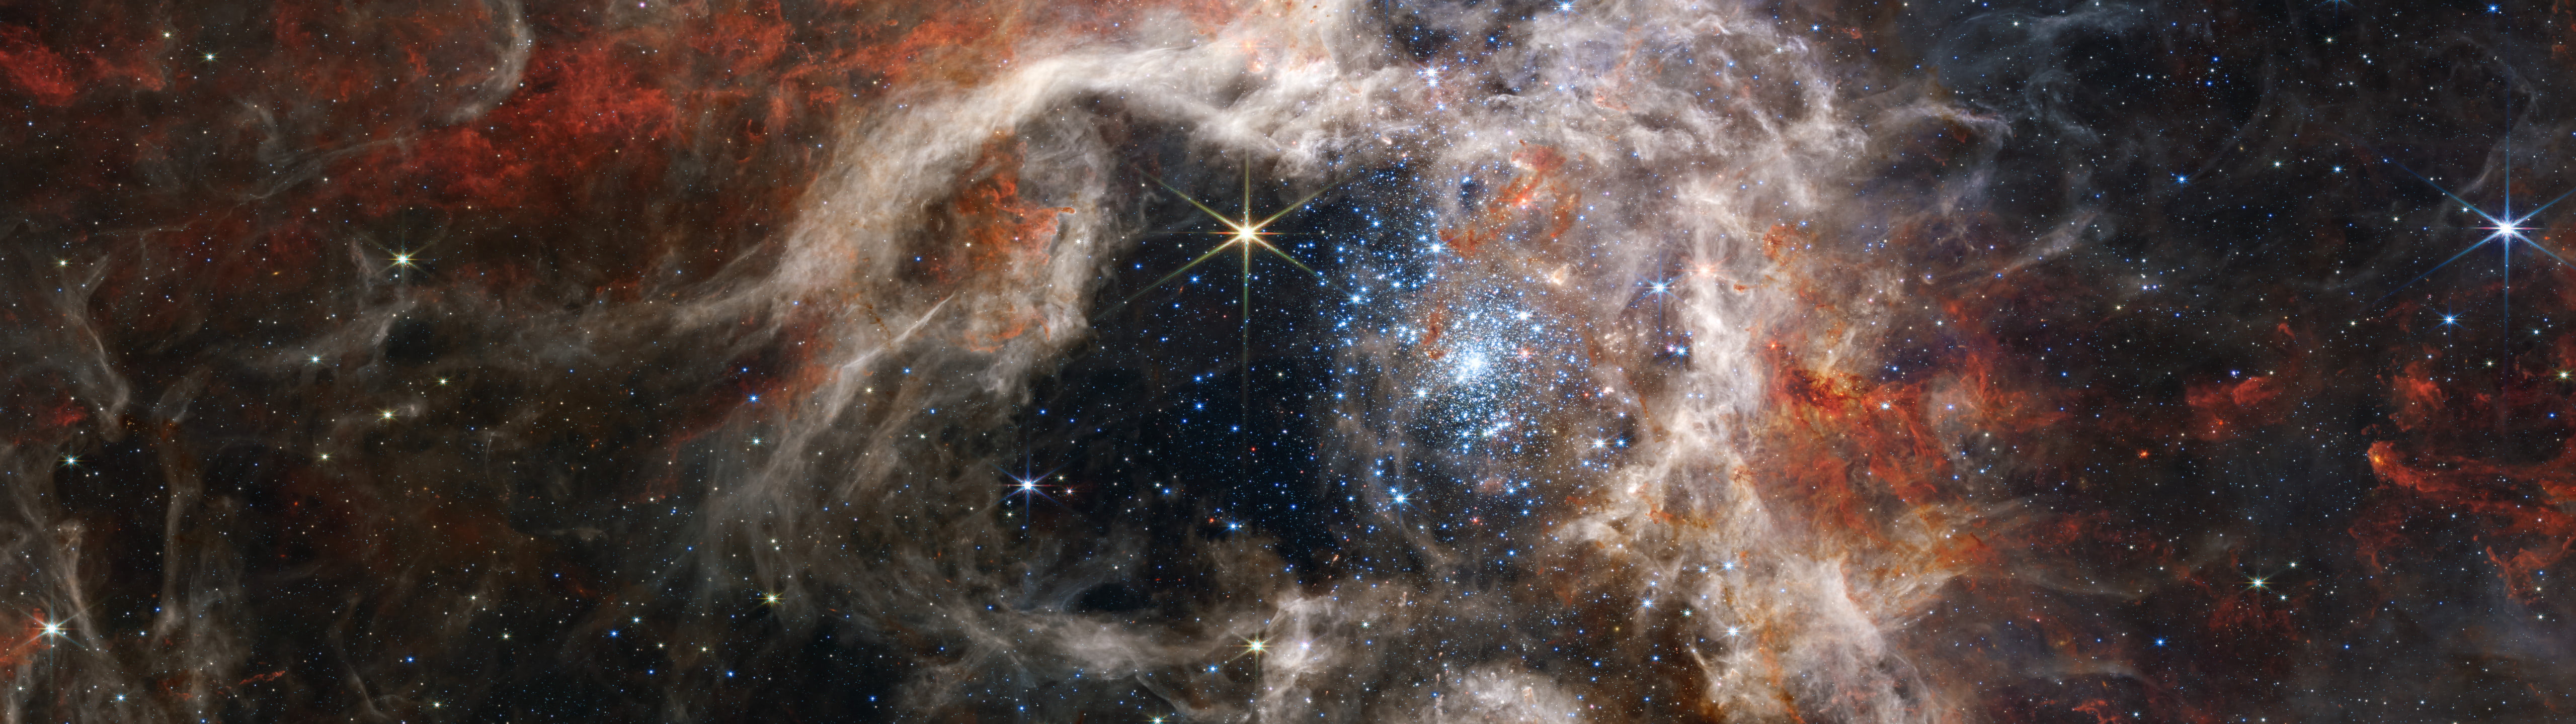 James Webb Space Telescope, science, ultrawide, super ultra wide